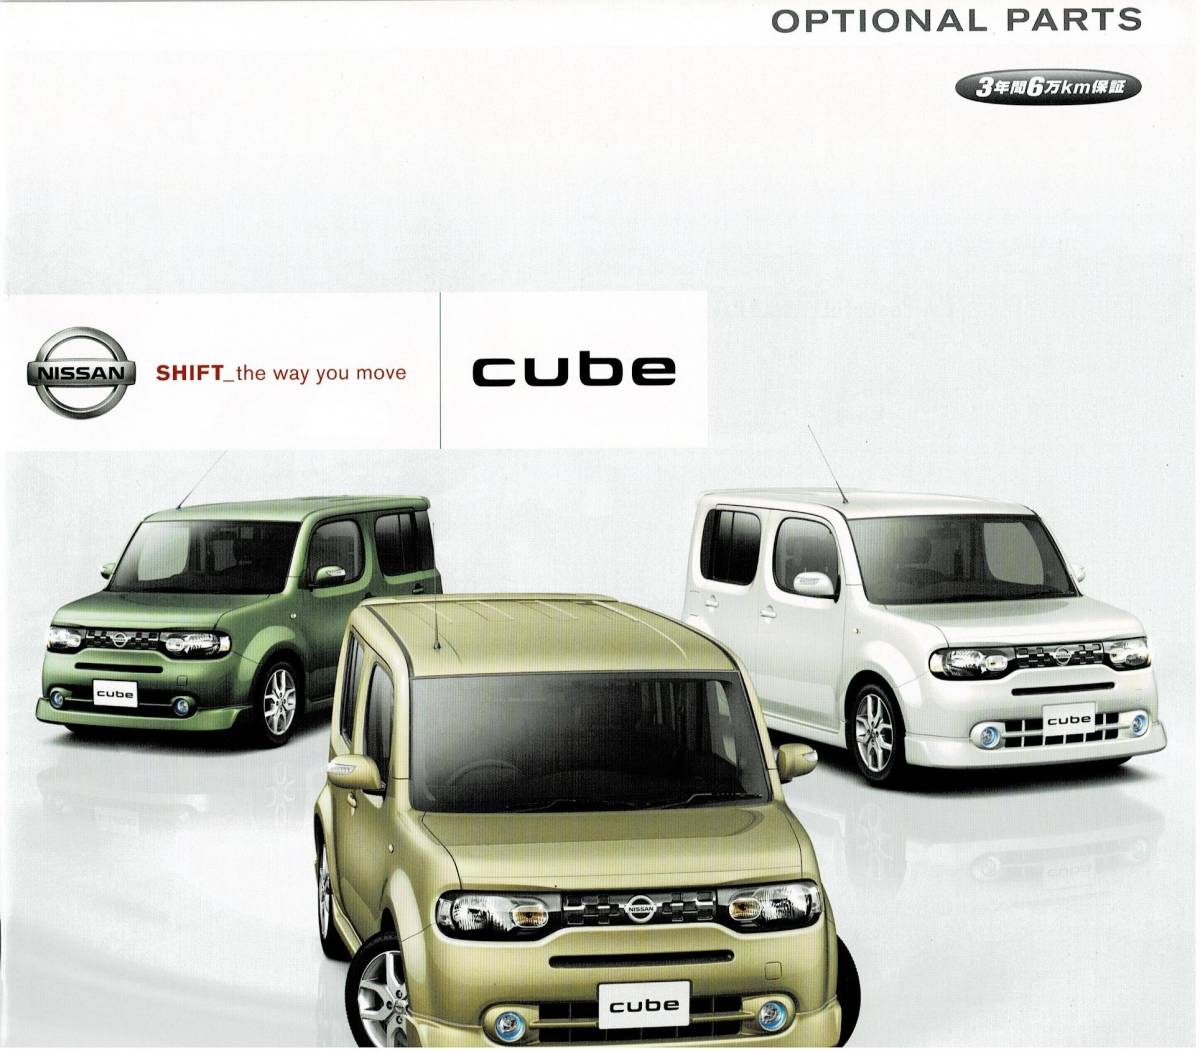  Nissan Cube каталог +OP 2009 год 10 месяц 